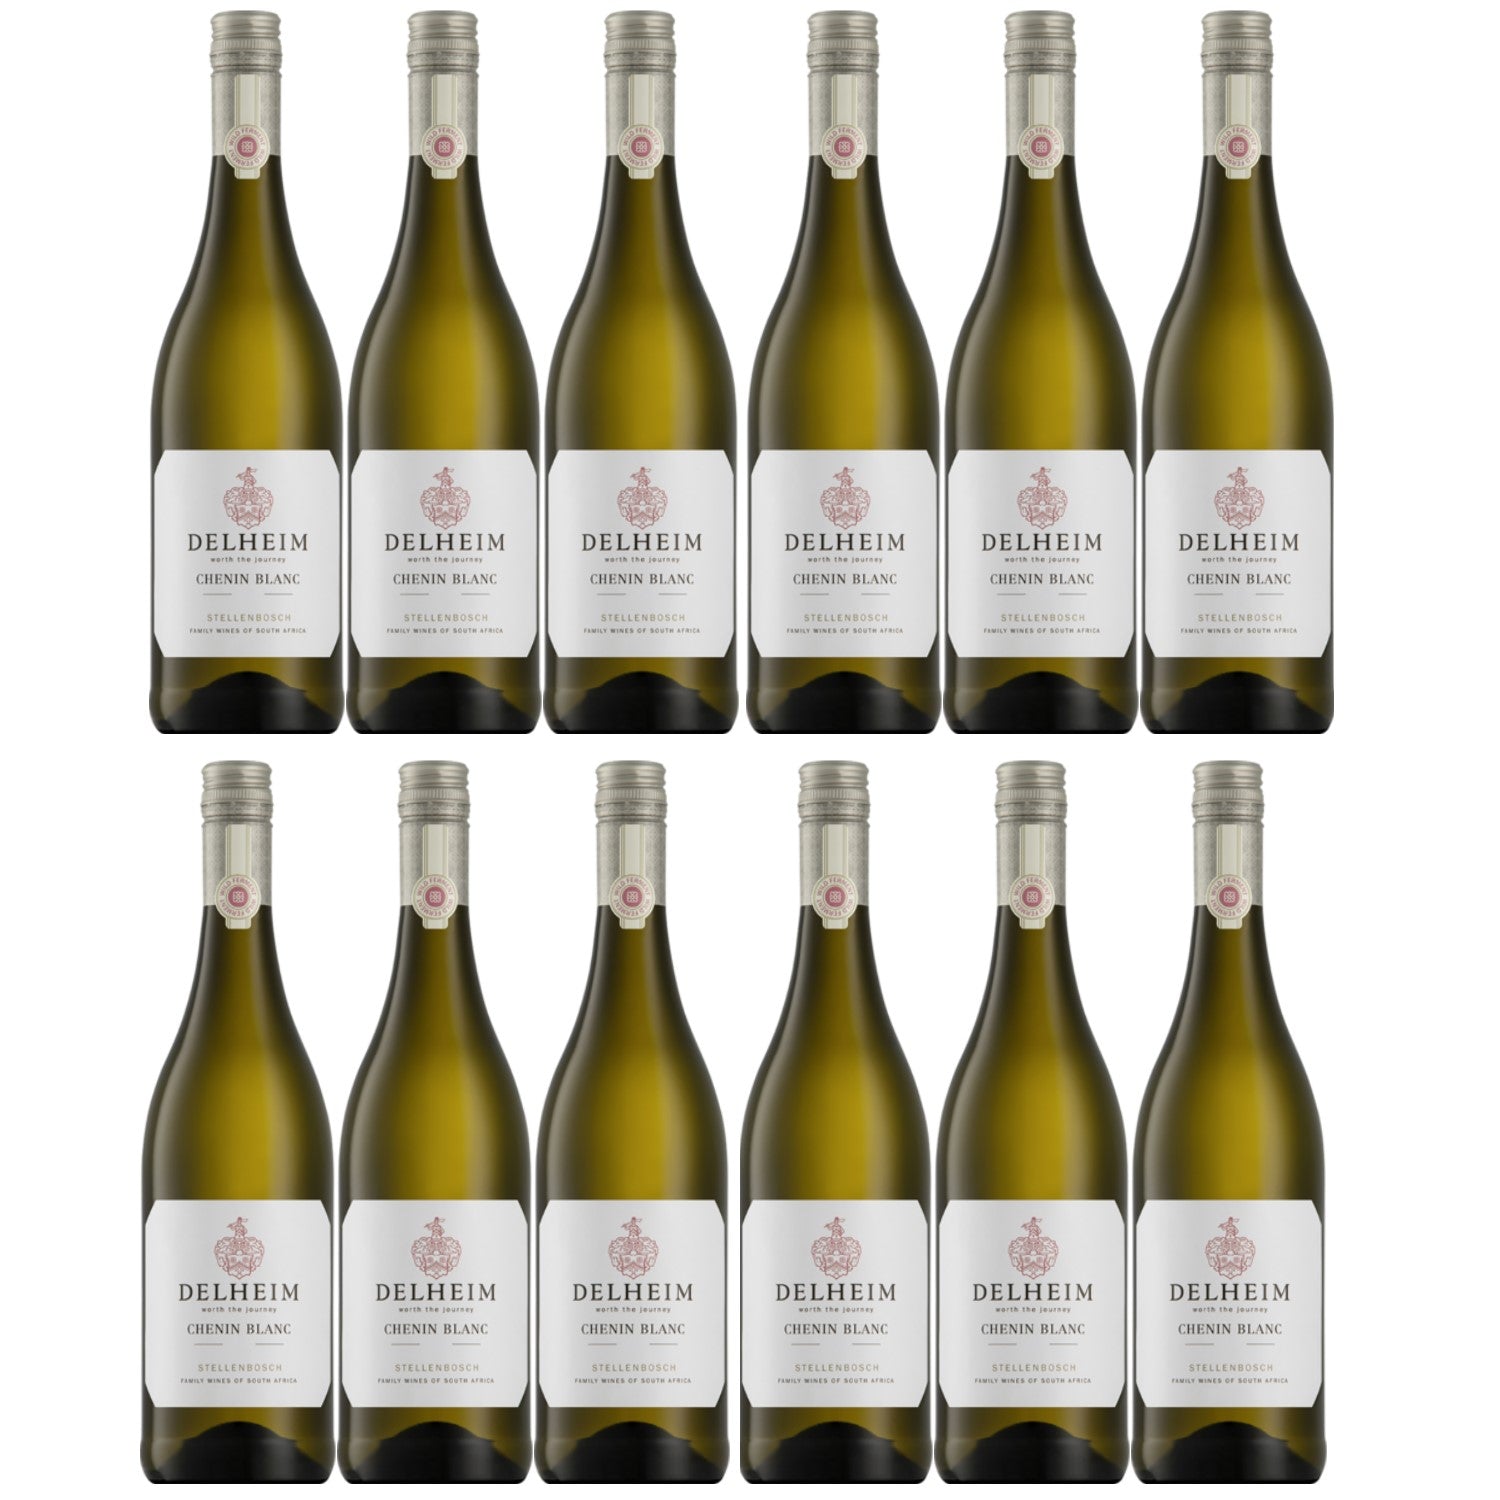 Delheim Chenin Blanc Wild Ferment Stellenbosch Weißwein Wein trocken Südafrika (12 x 0.75l) - Versanel -